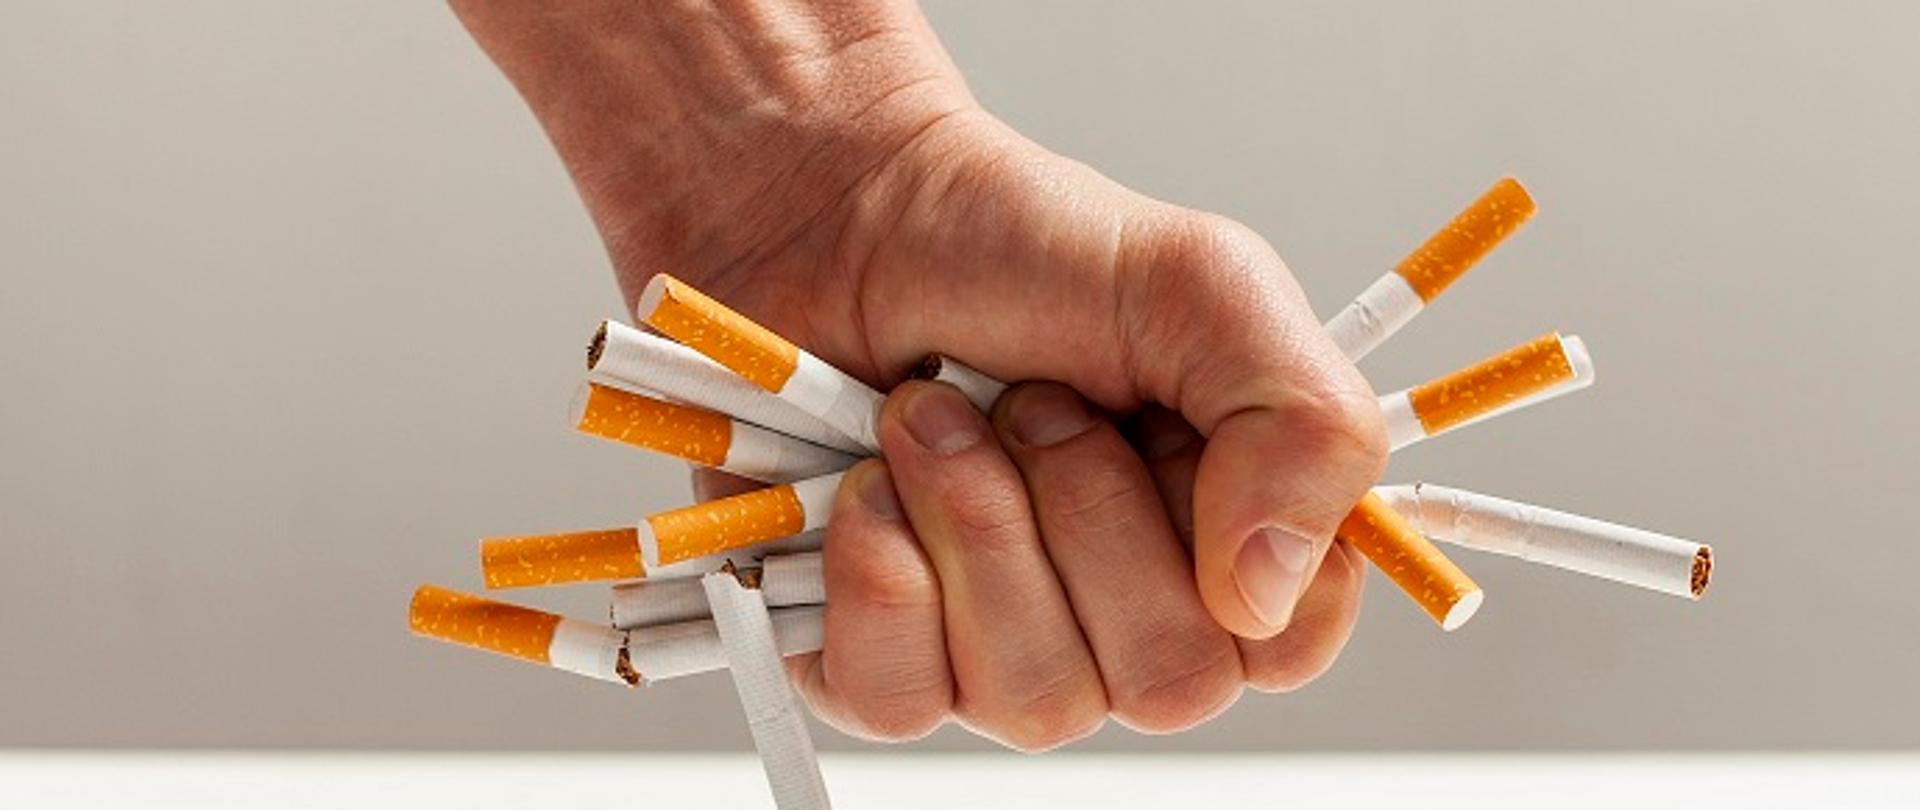 męska dłoń, która zaciskając się zgniata kilkanaście tradycyjnych papierosów. Obraz autorstwa Freepik